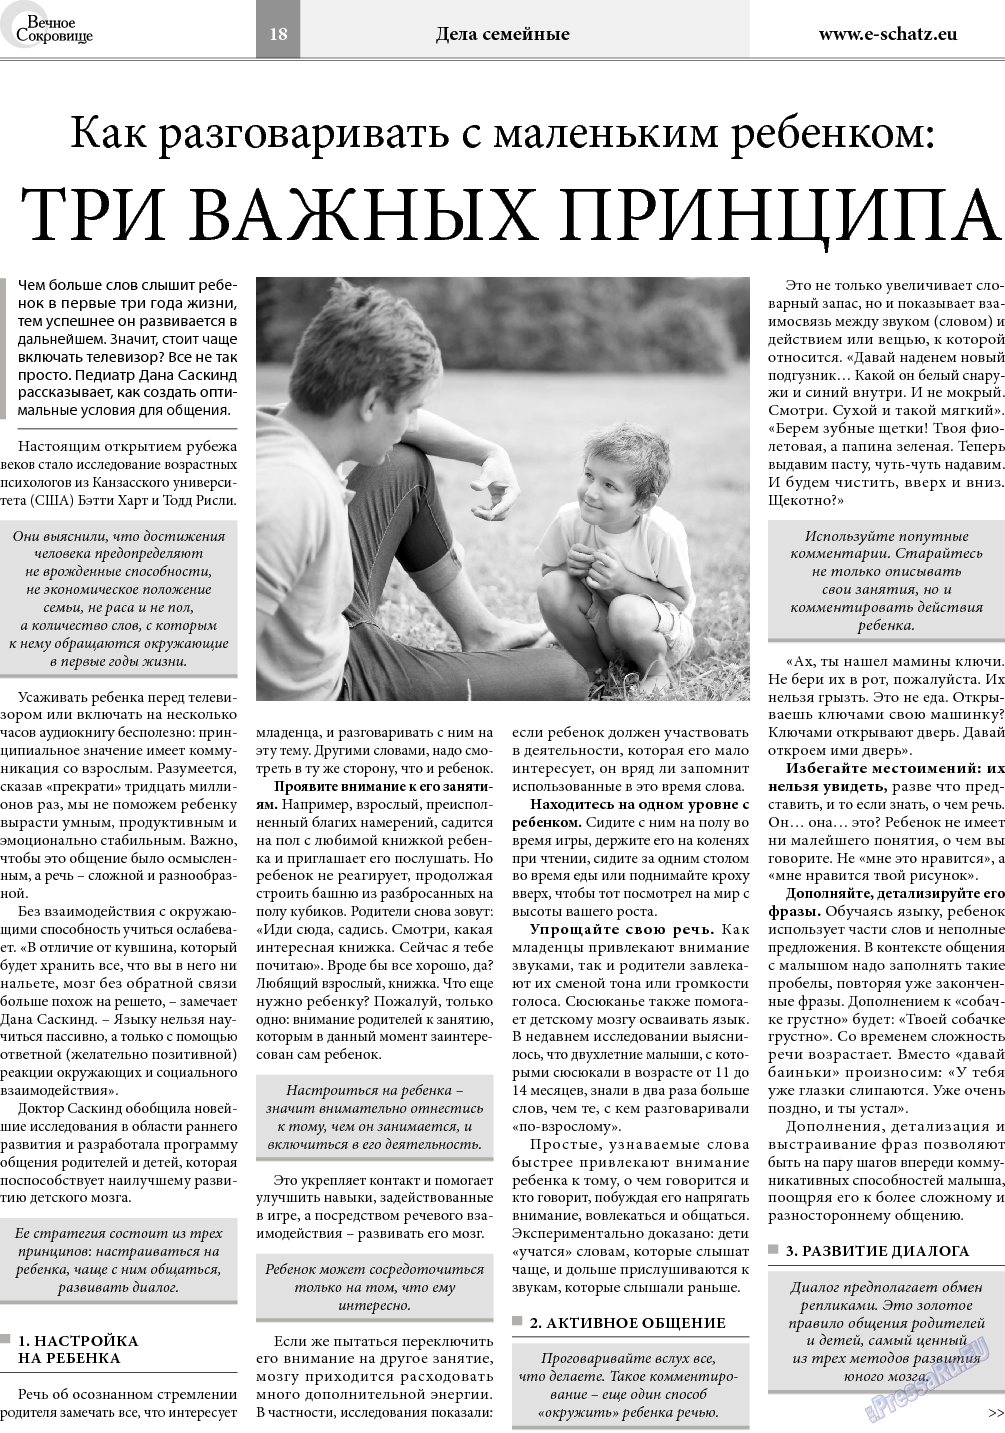 Вечное сокровище (газета). 2018 год, номер 2, стр. 18